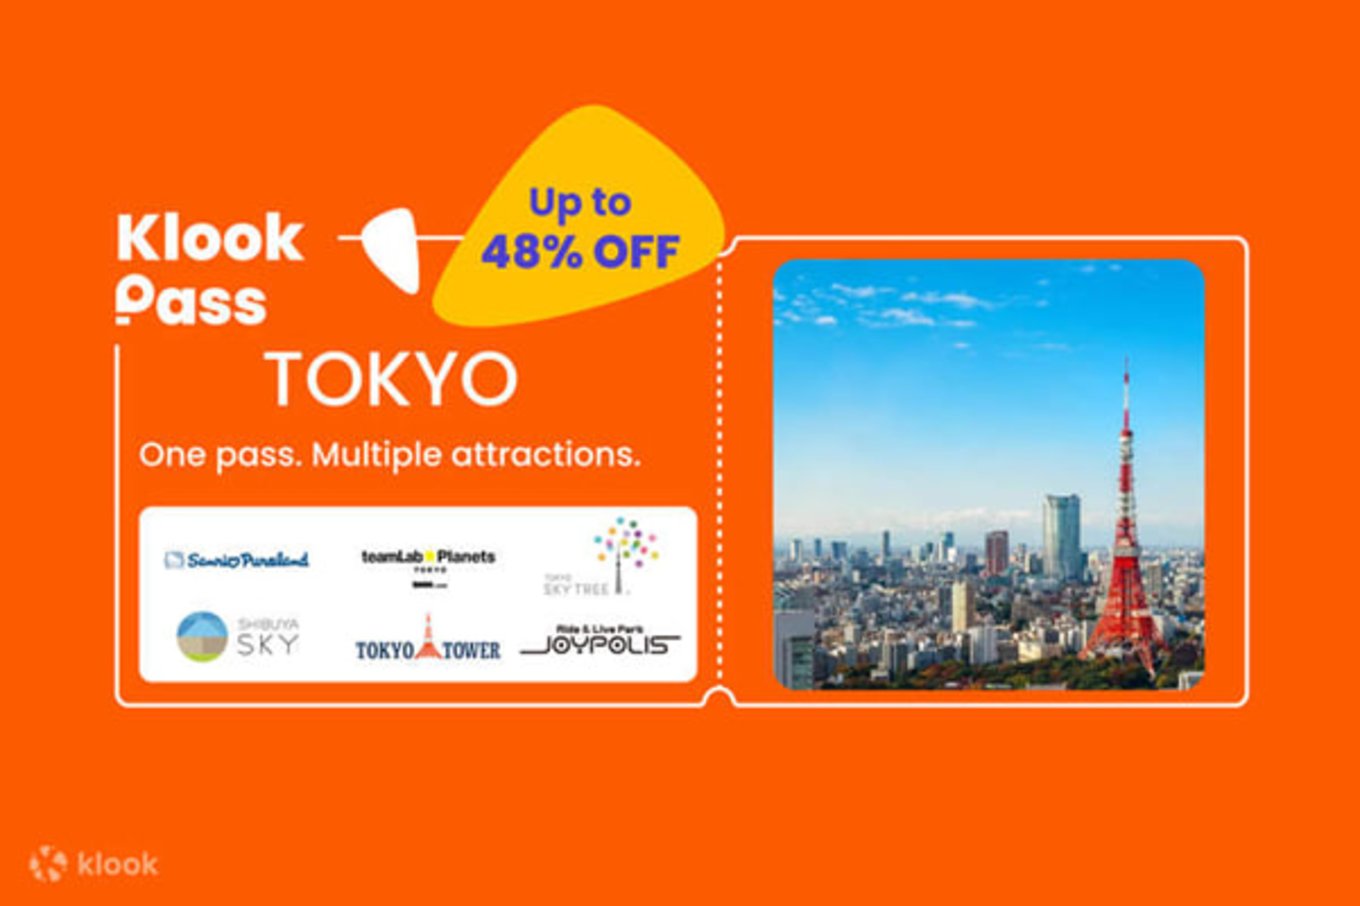 Klook Pass โตเกียว บัตรเดียวเที่ยวทั้งทริป